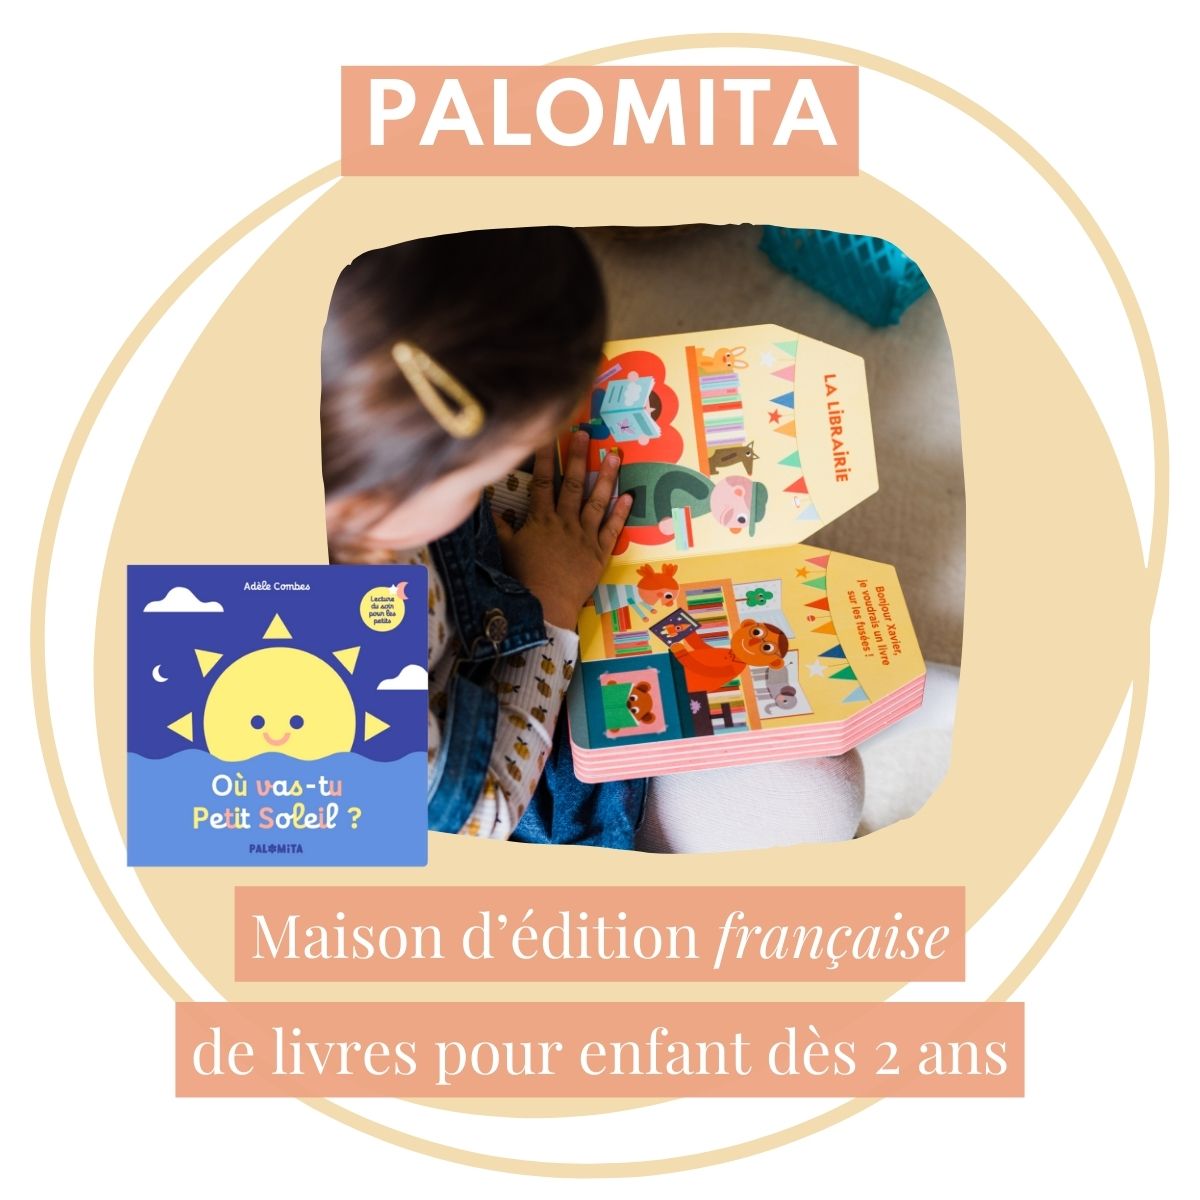 Palomita, maison d'édition française de livre pour enfants dès 2 ans